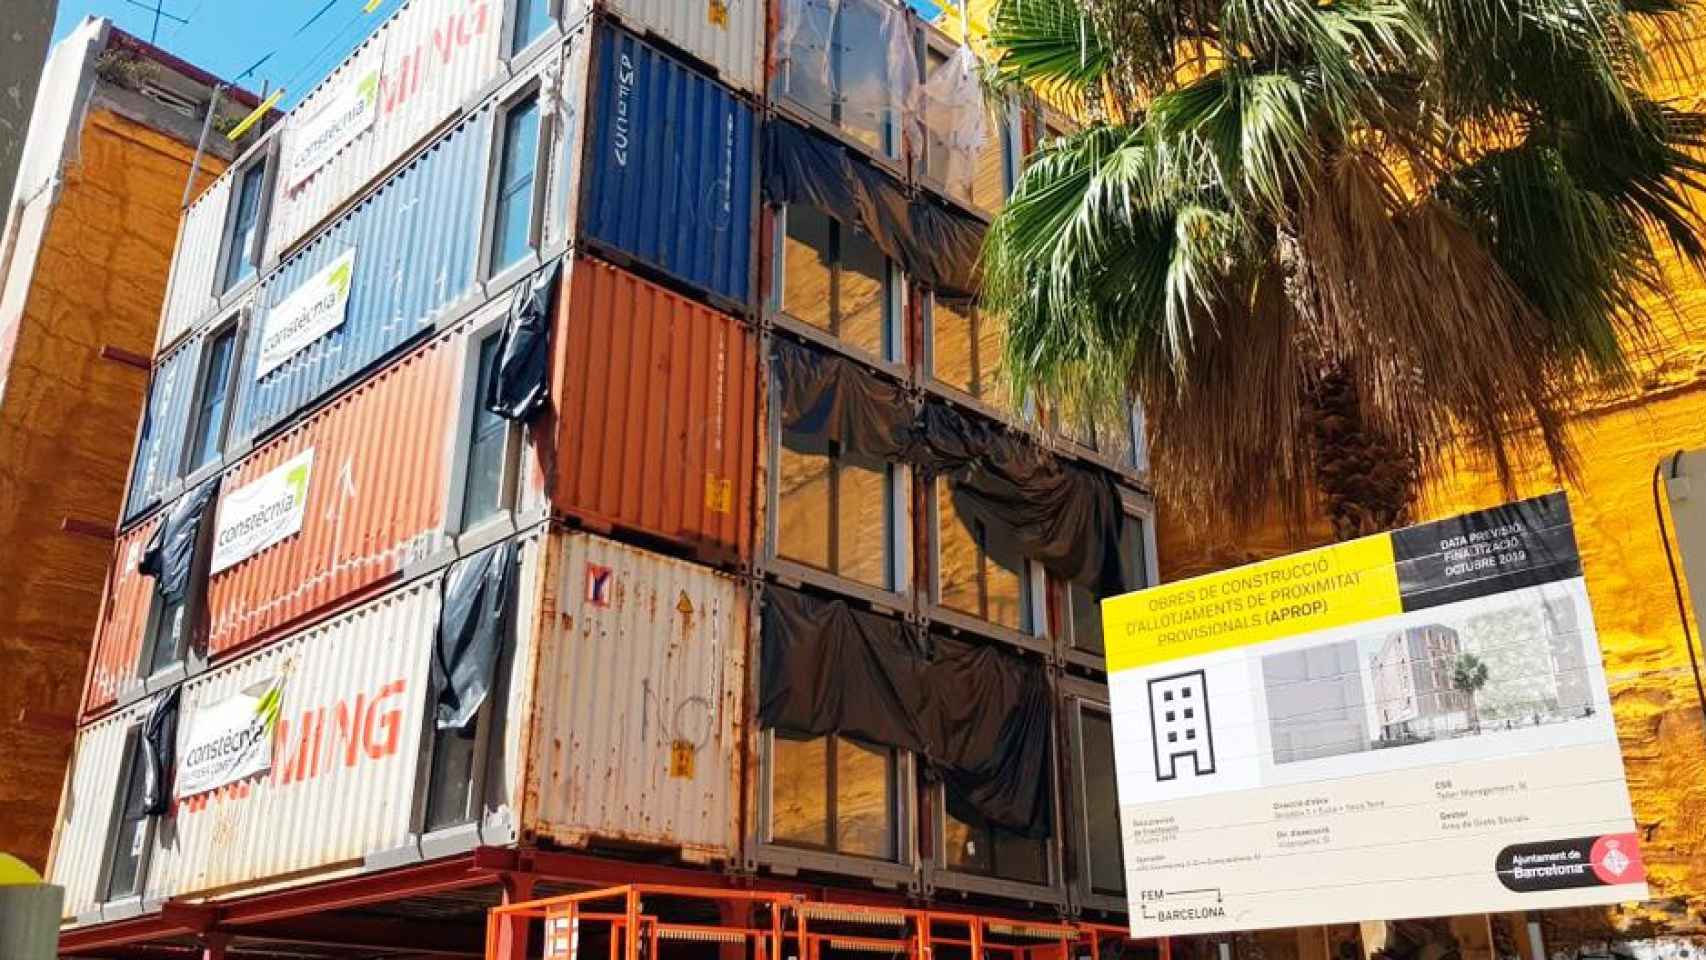 El nuevo proyecto Aprop de casas-contenedor marítimo en Barcelona / CG